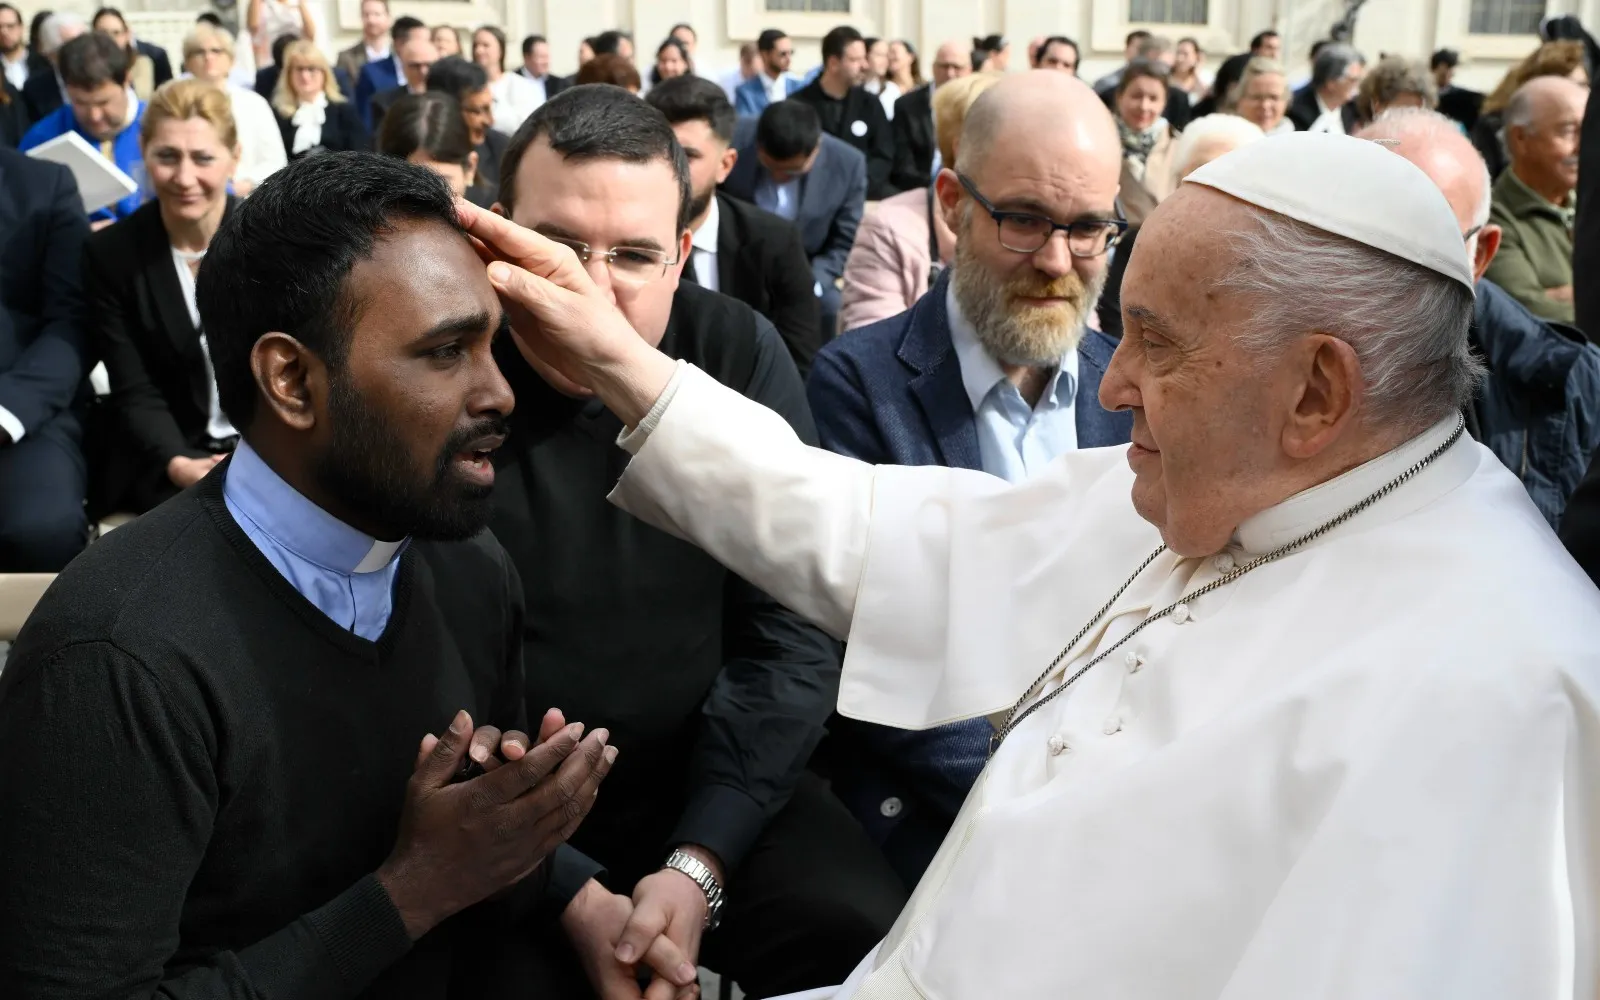 El Papa Francisco bendice a un sacerdote tras una Audiencia General?w=200&h=150